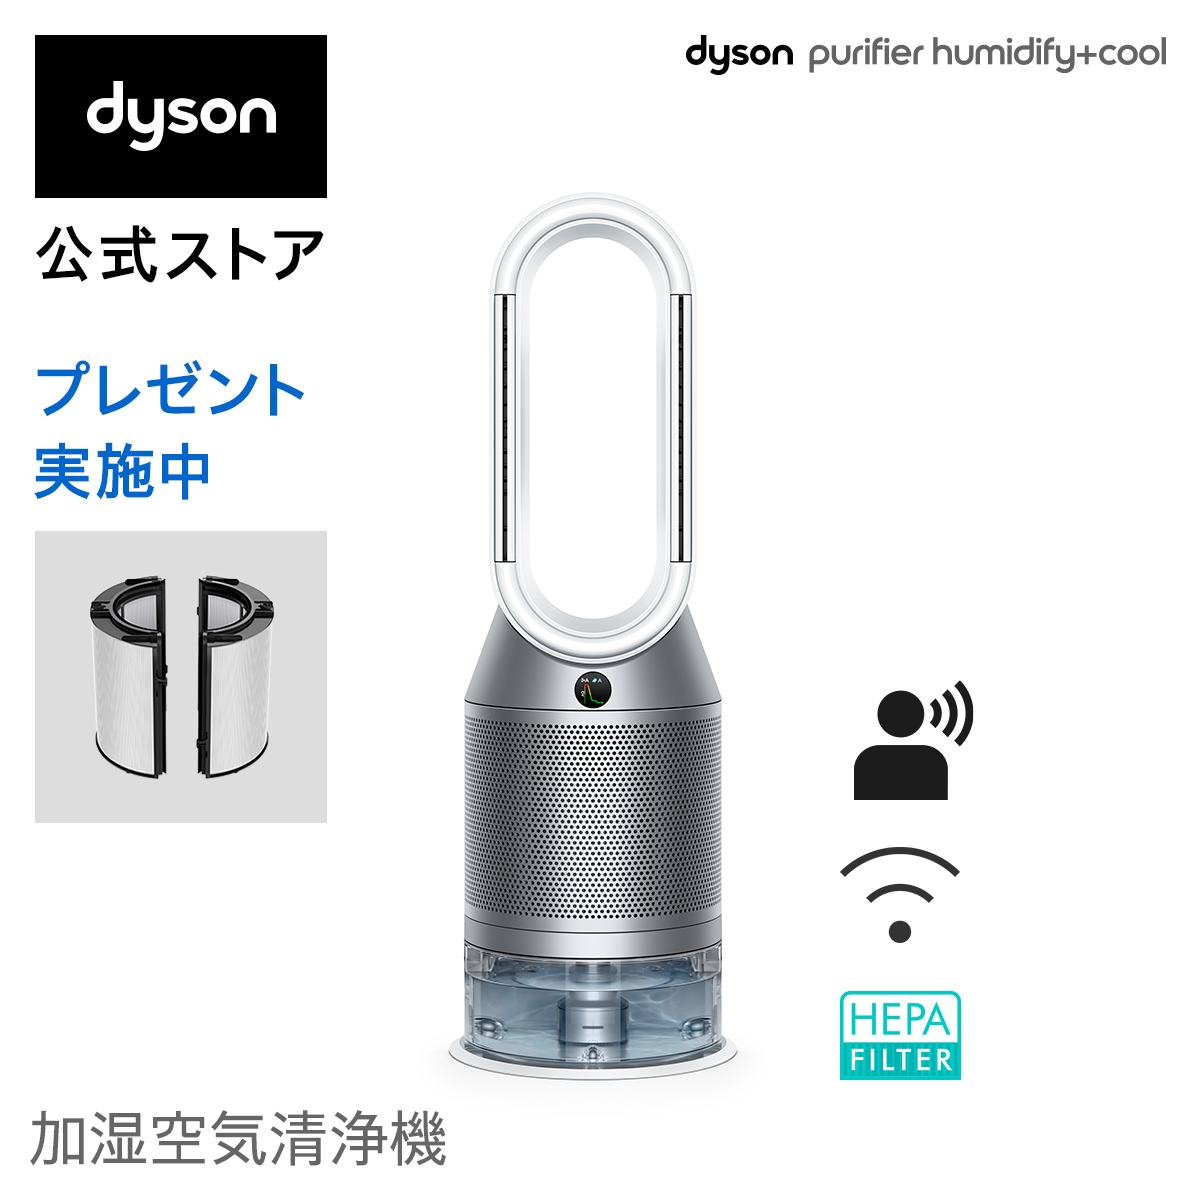 Ｐｒｅｍｉｕｍ Ｌｉｎｅ ☆dyson / ダイソン Dyson Purifier Humidify